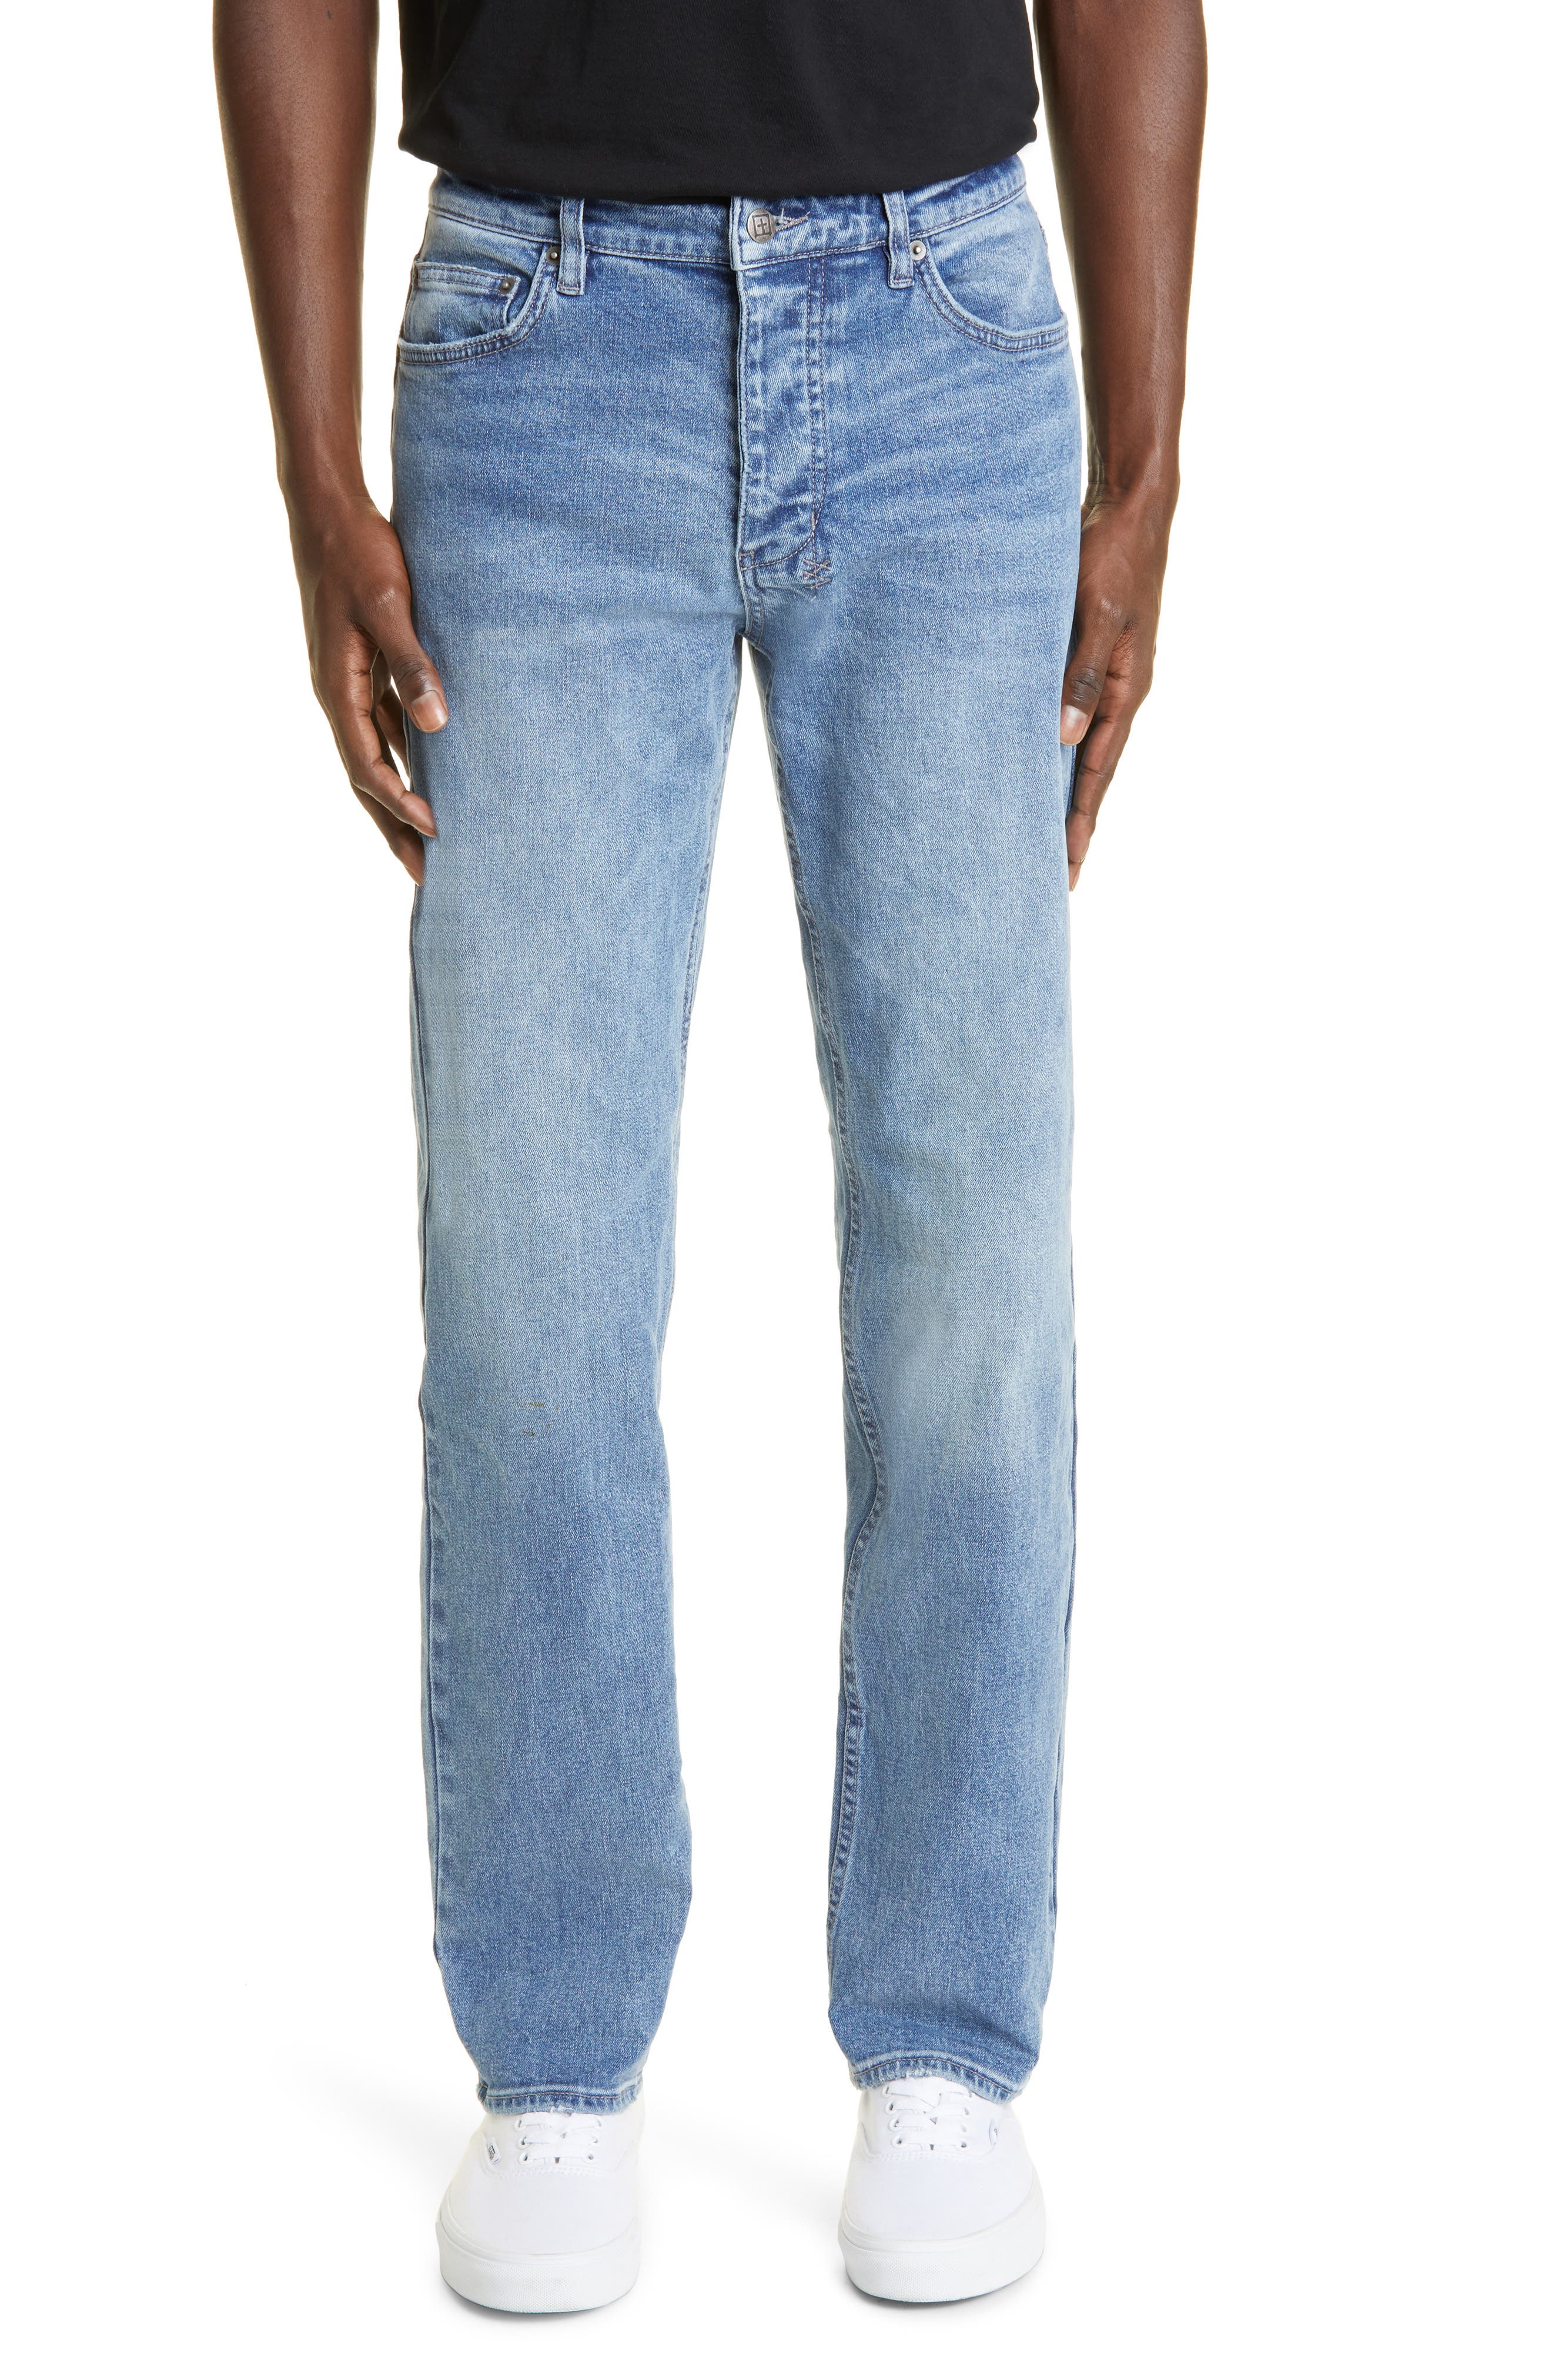 Ksubi Hazlow Tapered Straight Leg Jeans in Denim at Nordstrom, Size 30 X 32